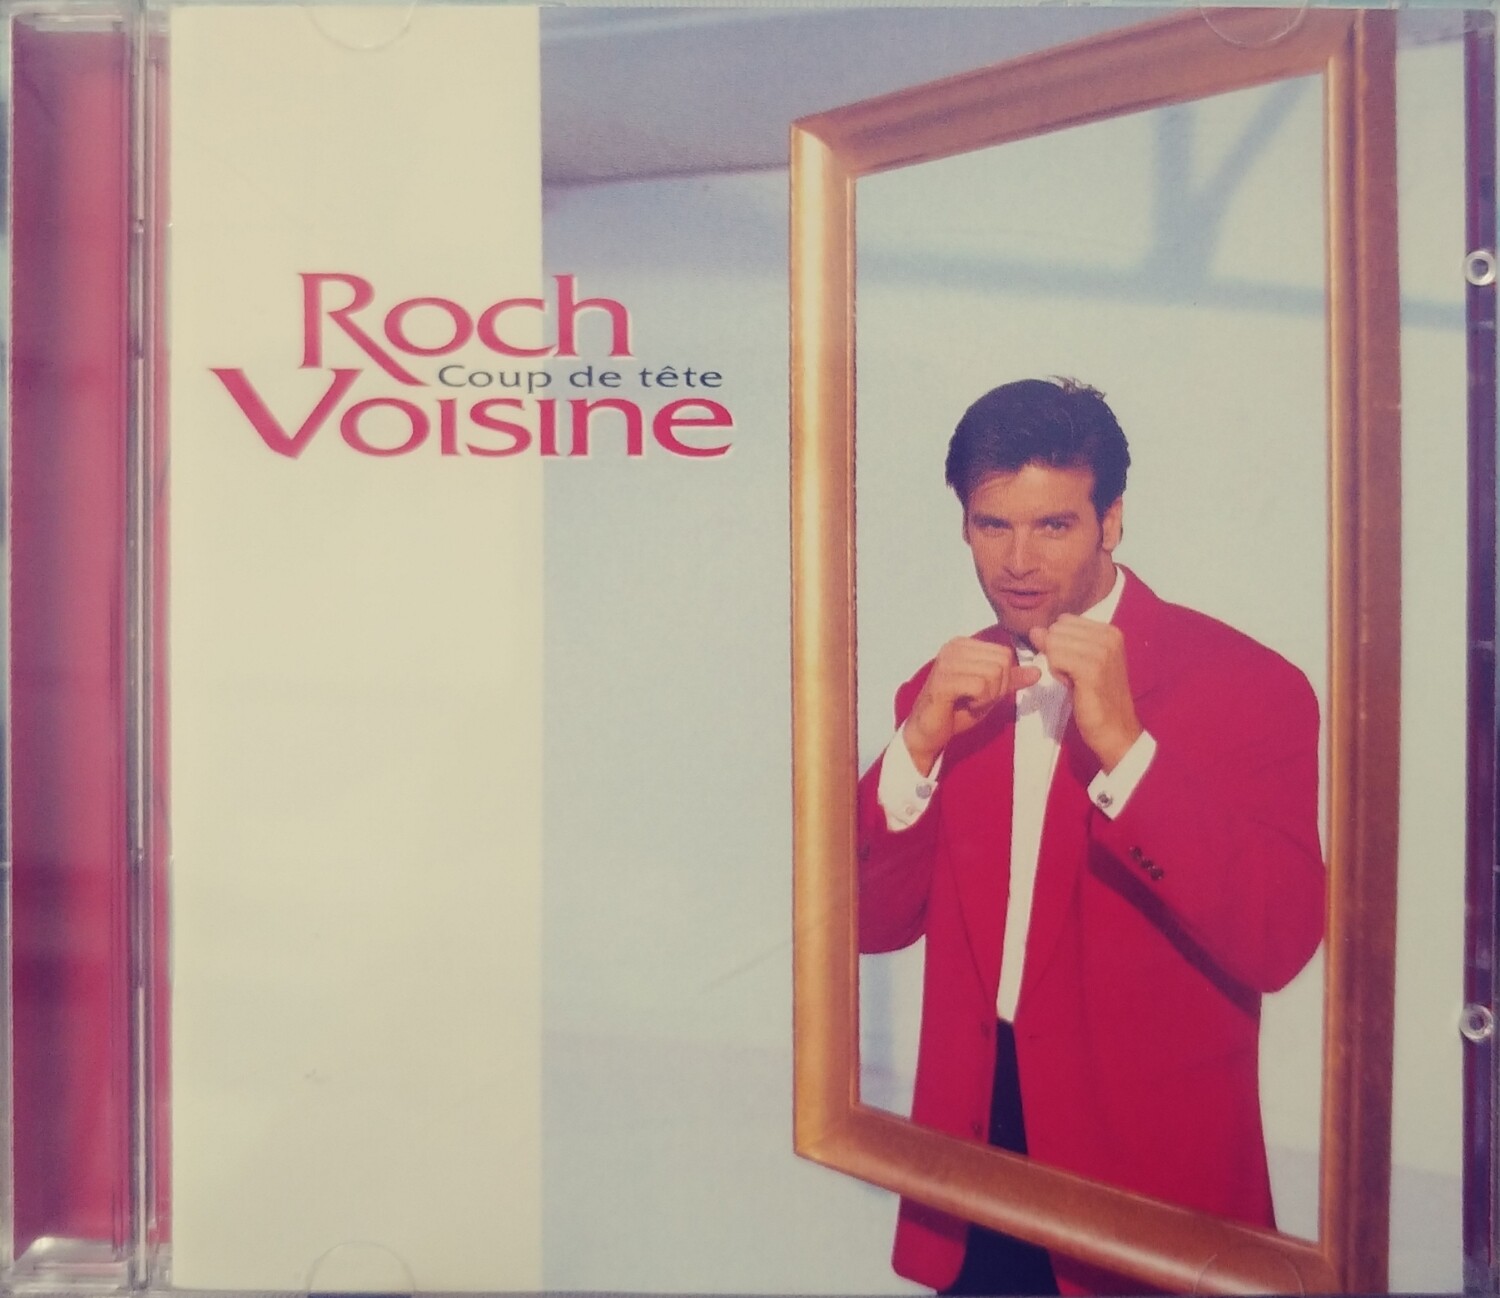 Roch Voisine - Coup de tête (CD)